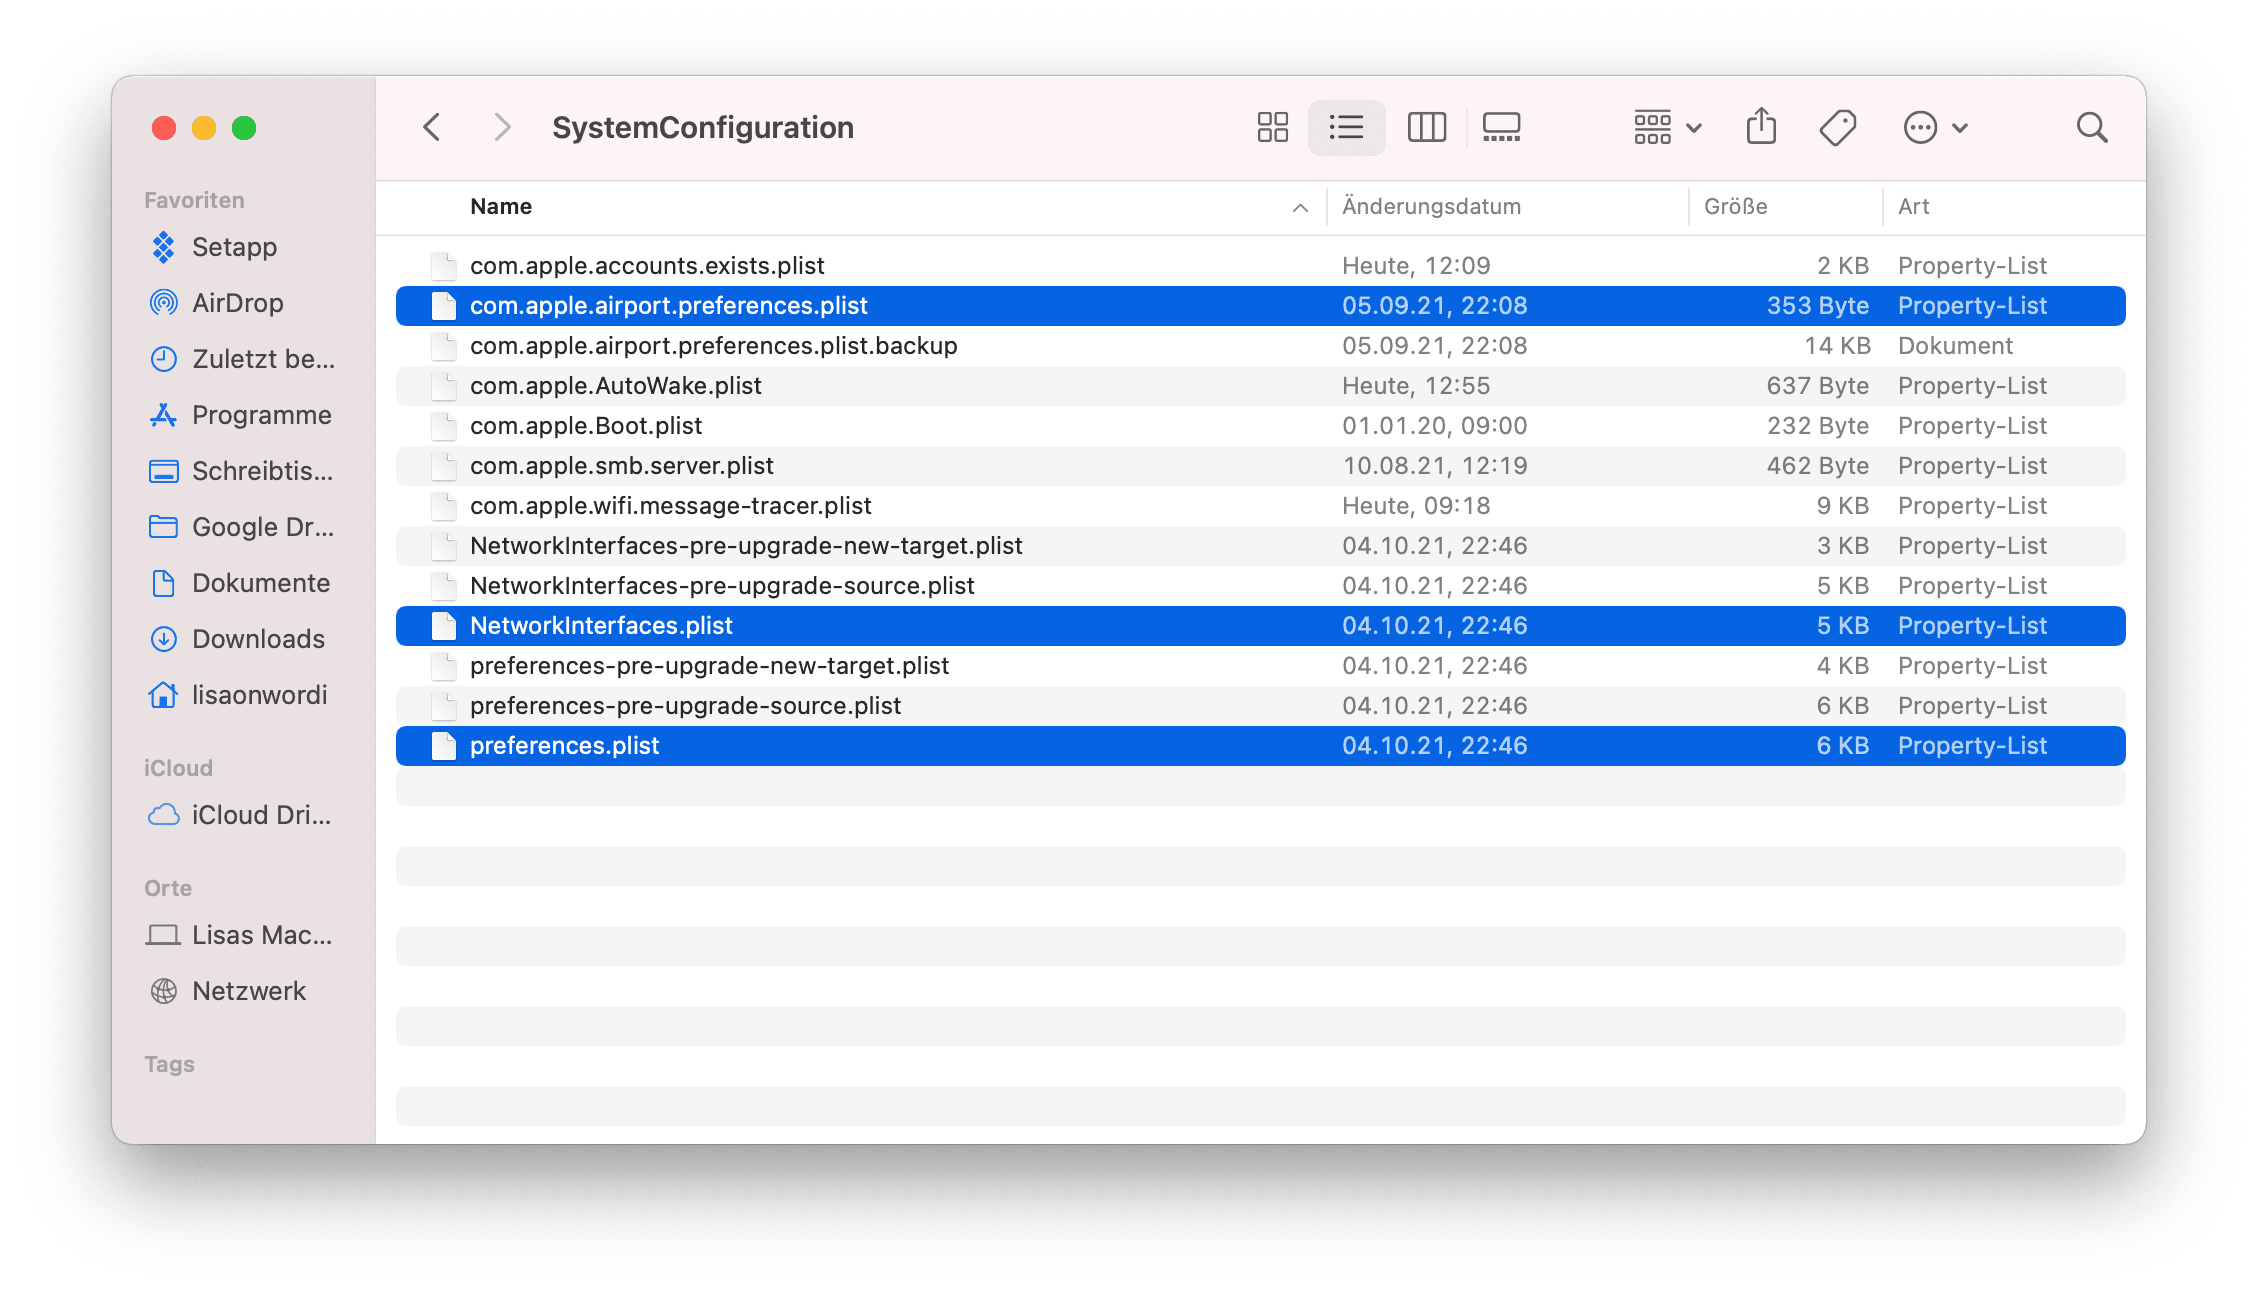 Überprüfen Sie die Systemanforderungen: Stellen Sie sicher, dass Ihr Mac die erforderlichen Voraussetzungen für das macOS Catalina Update erfüllt.
Deaktivieren Sie vorübergehend Ihre Antivirensoftware oder Firewall.